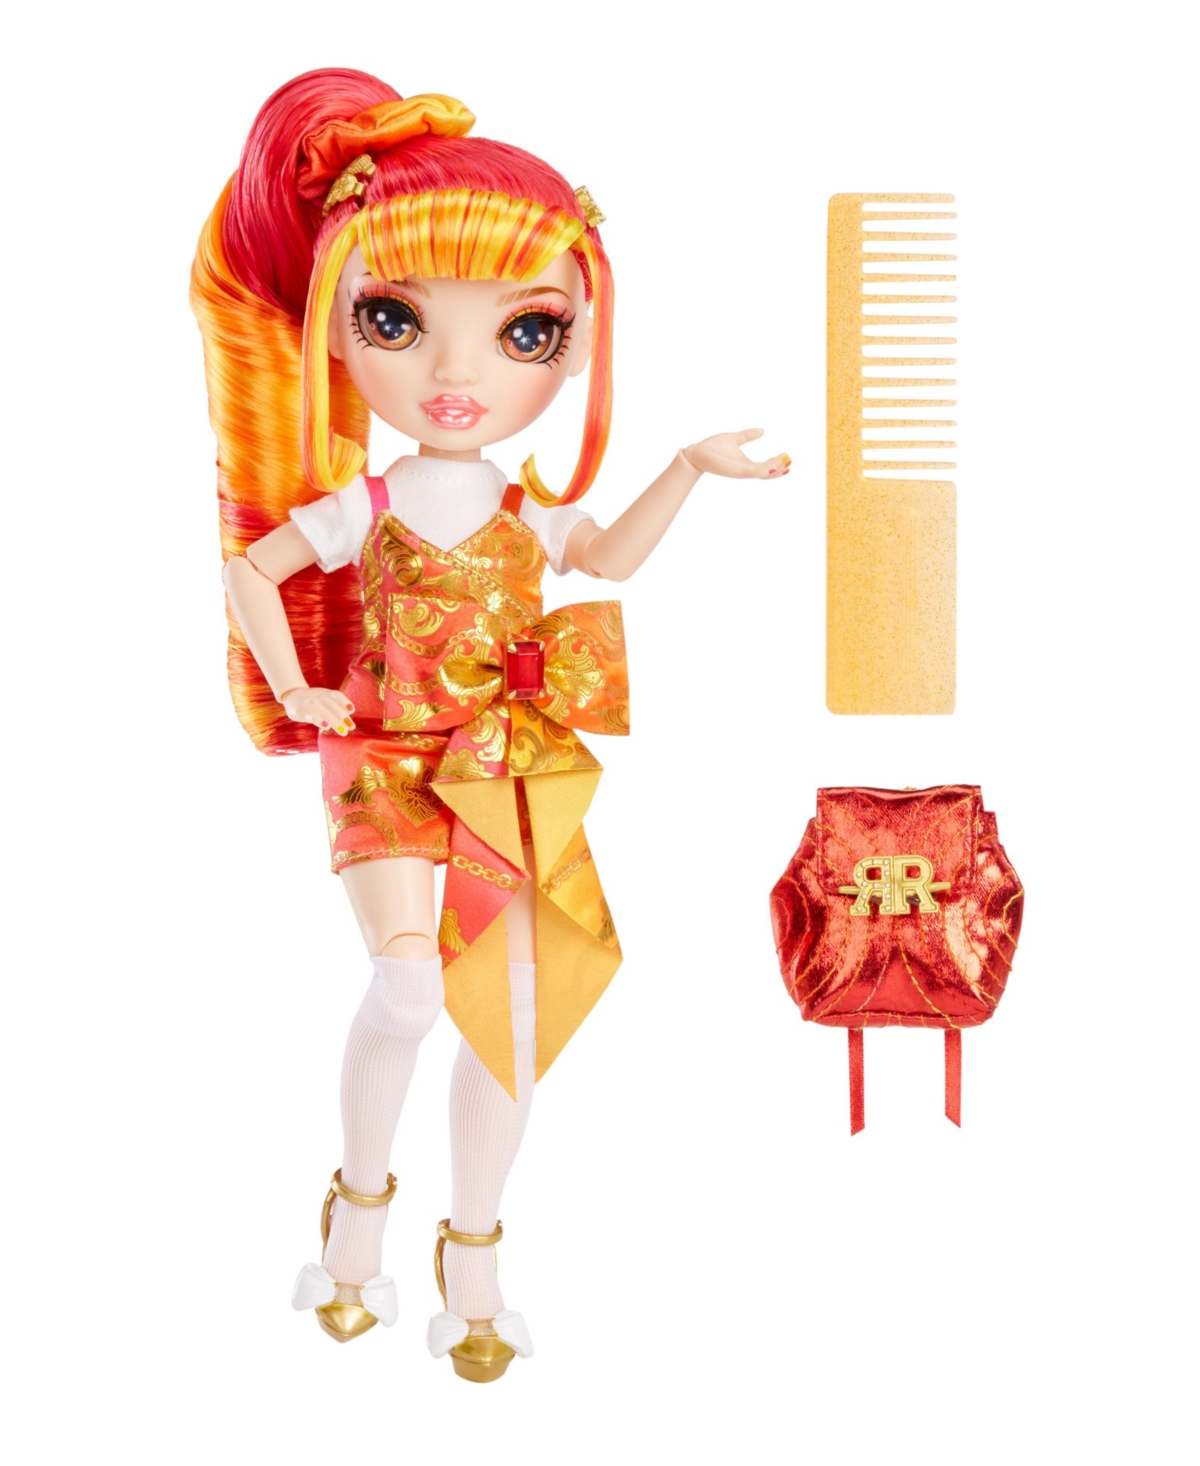 Shop Rainbow High Junior High Special Edition Doll, Laurel De'vious In Multicolor